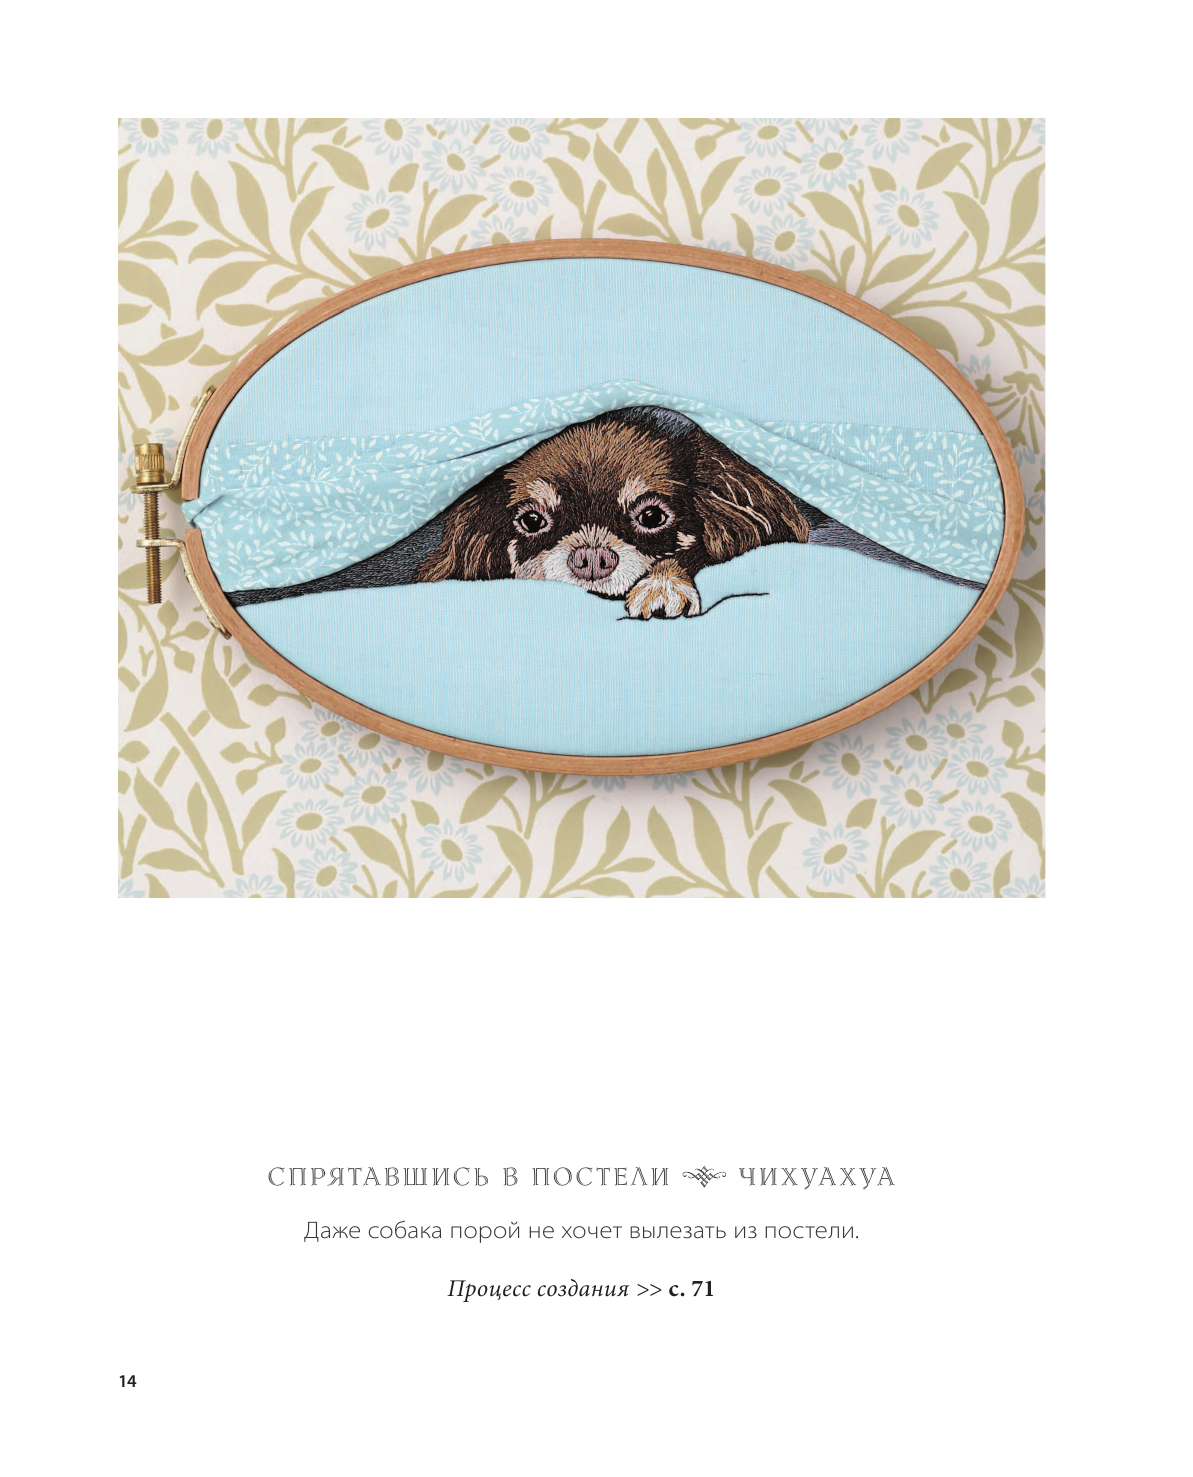 Портретная вышивка. Самоучитель по «рисованию» собак вышивальной иглой (чихуахуа) - фото №13